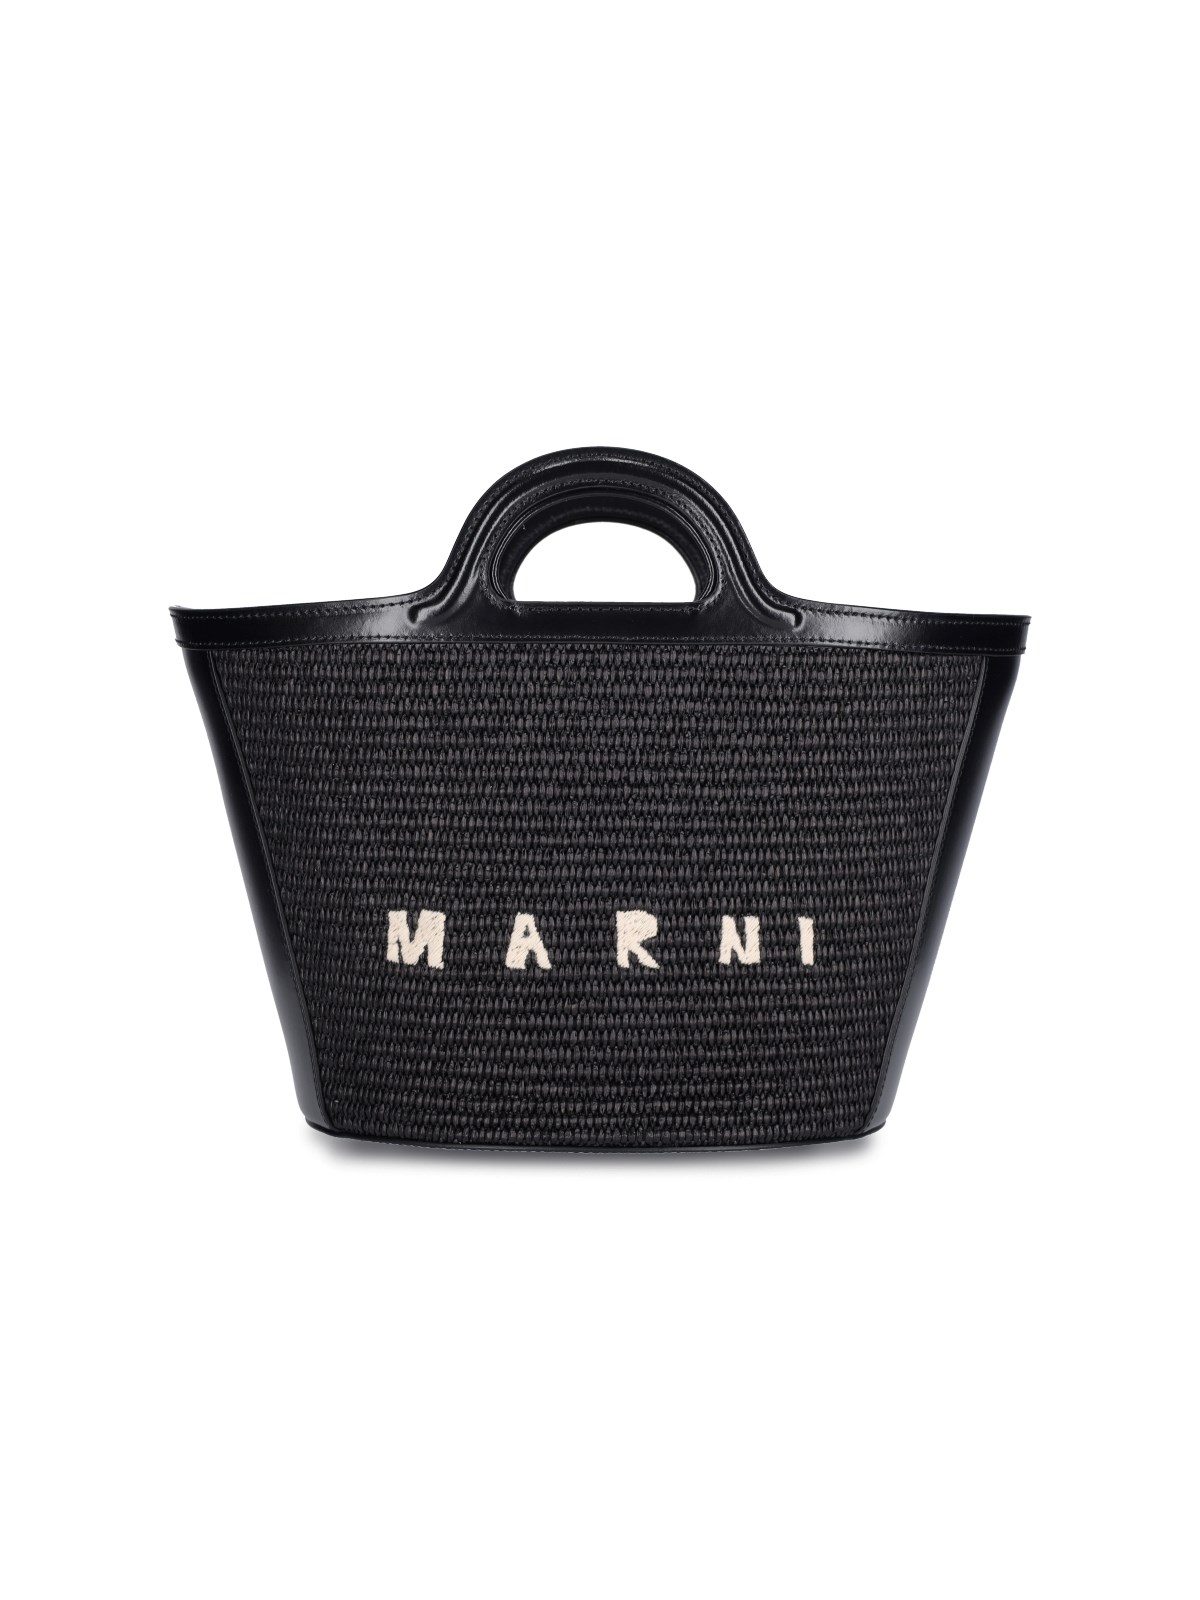 Marni "tropicalia" Small Tote Bag In Black  